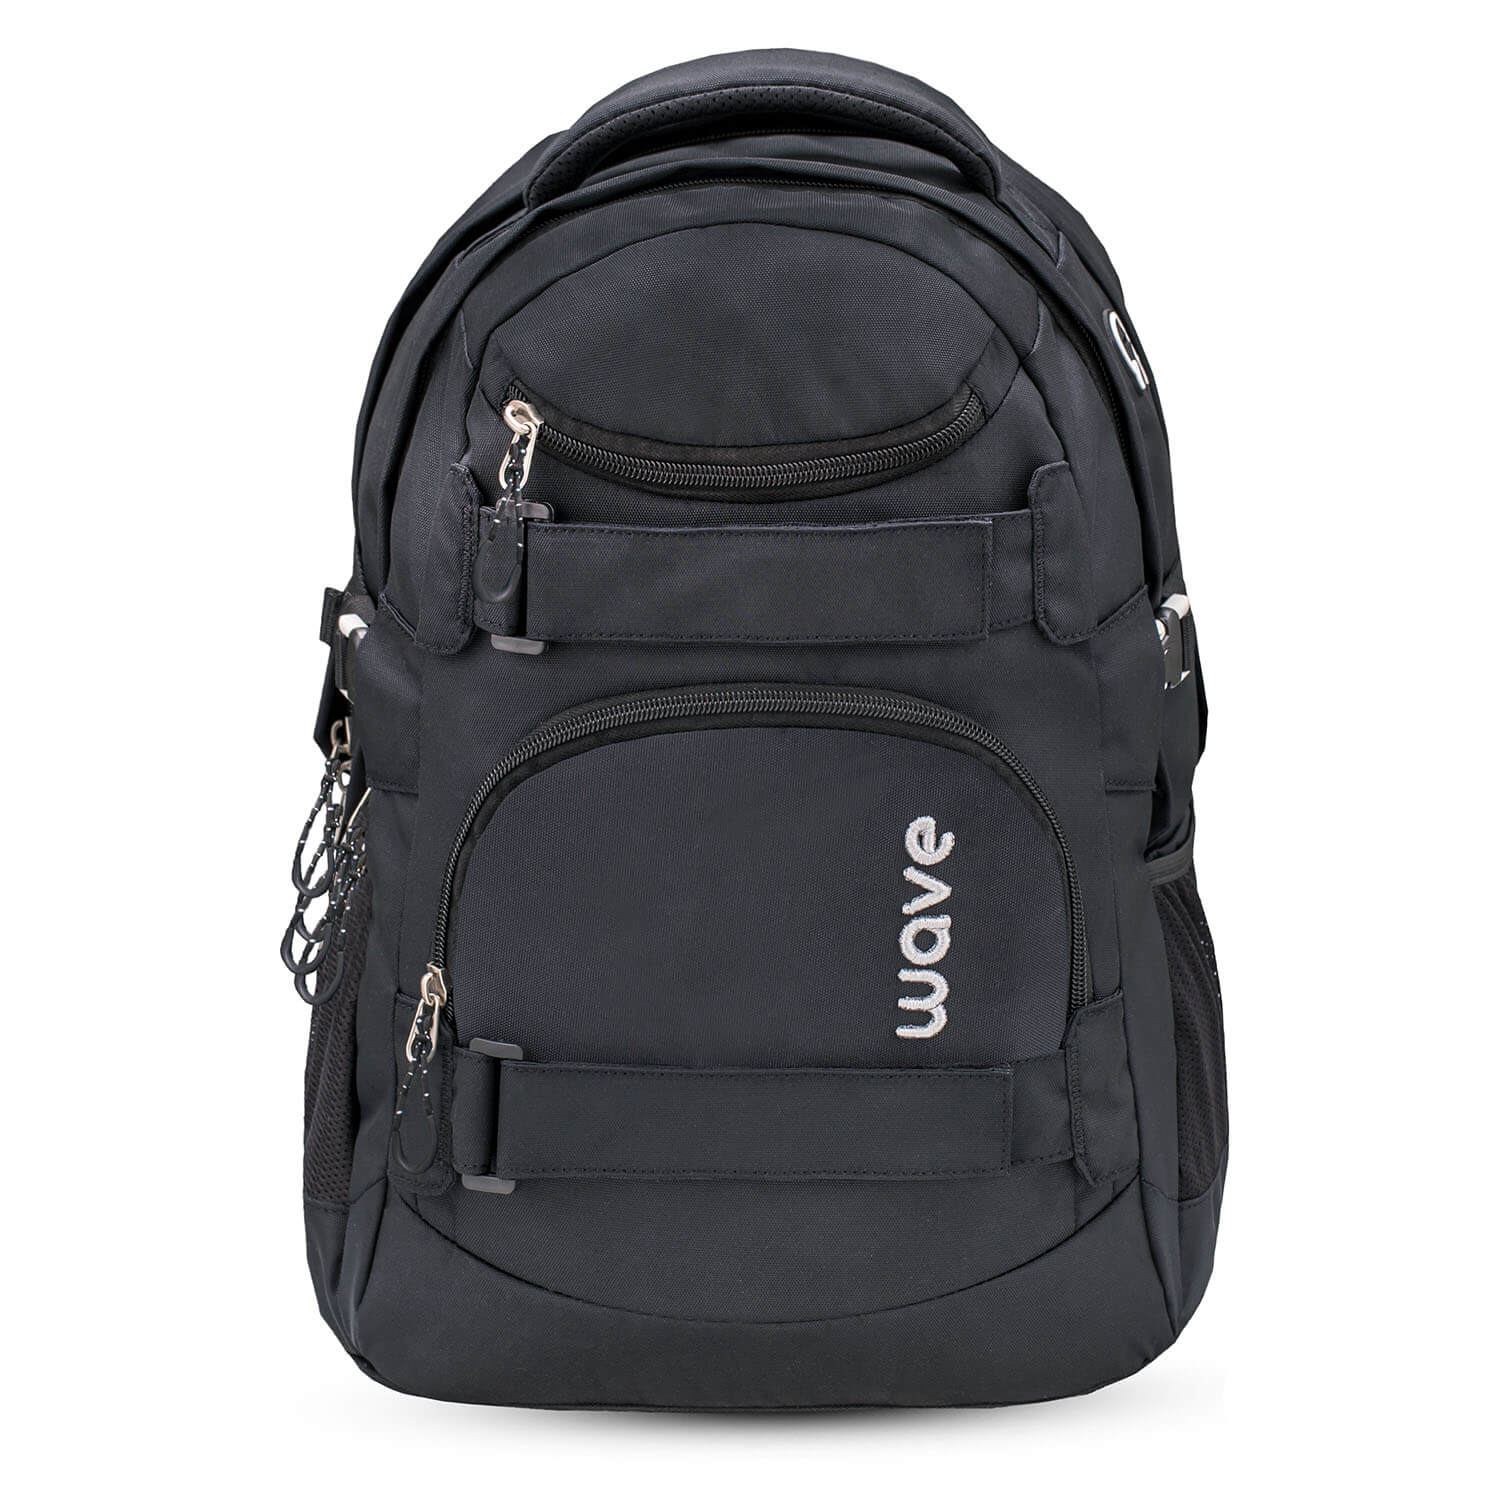 Wave Infinity Black school backpack